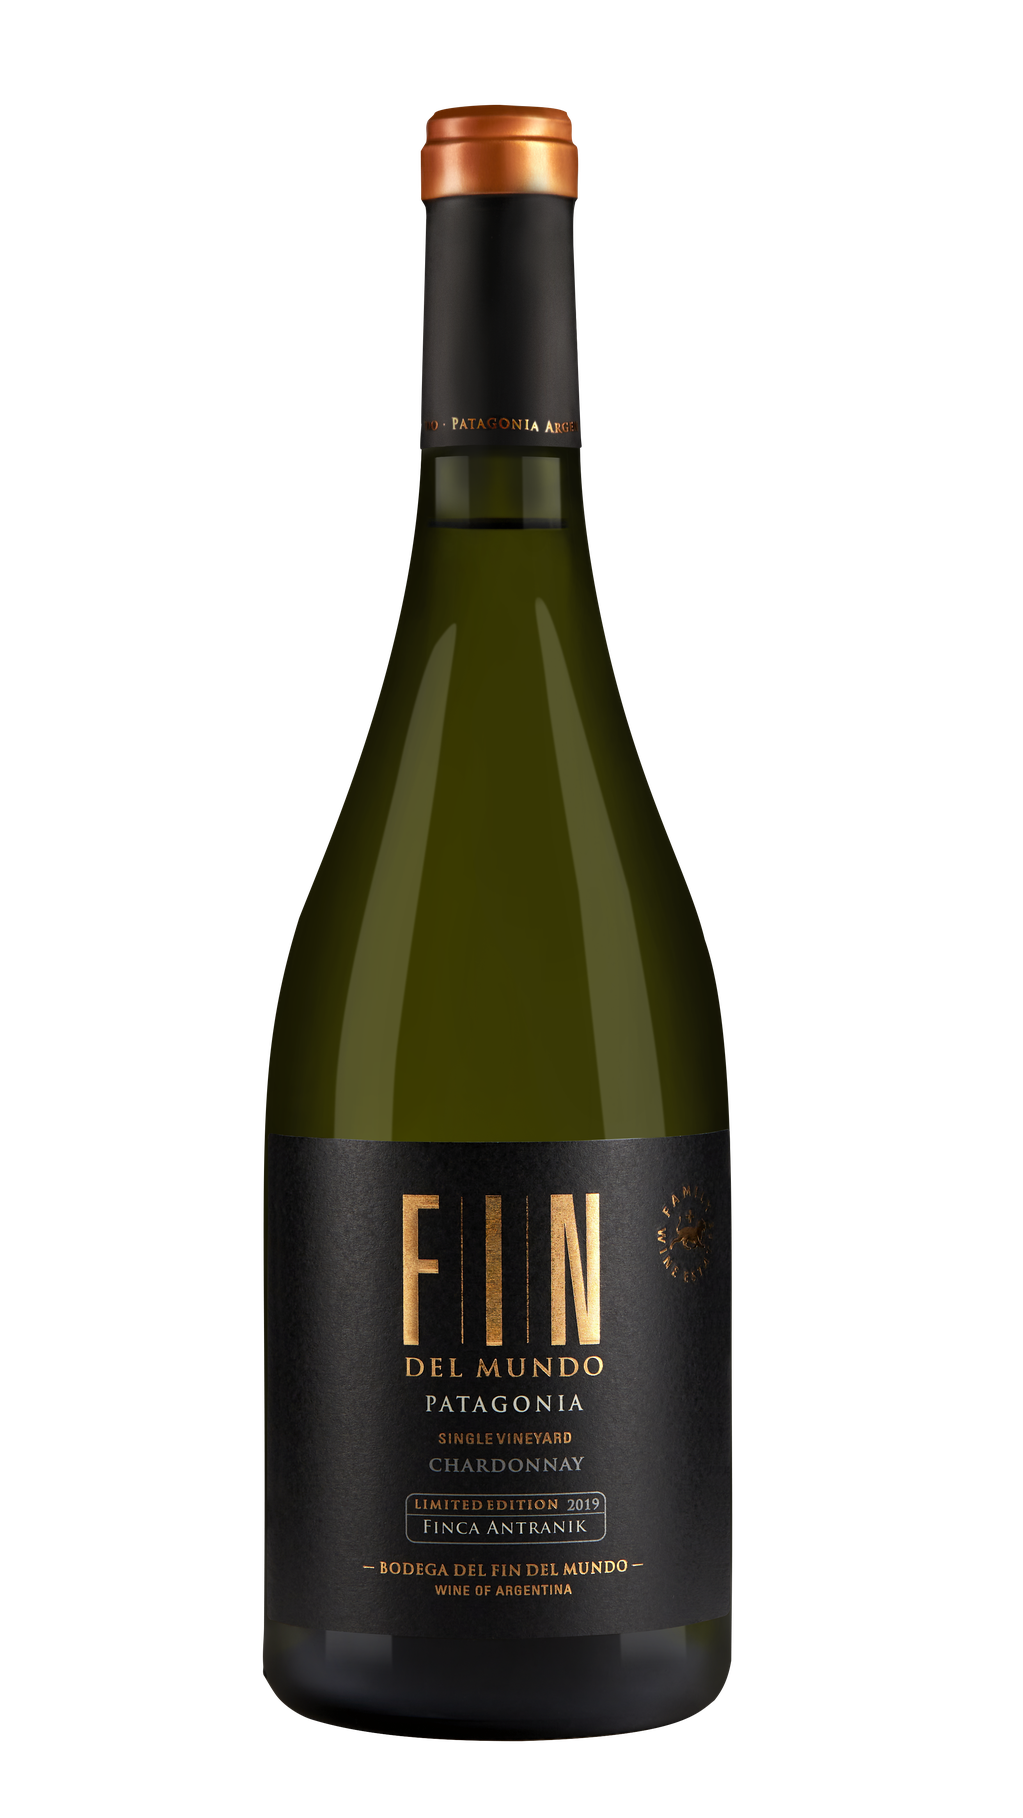 FIN, Single Vineyard 2019, de Bodega del Fin del Mundo.